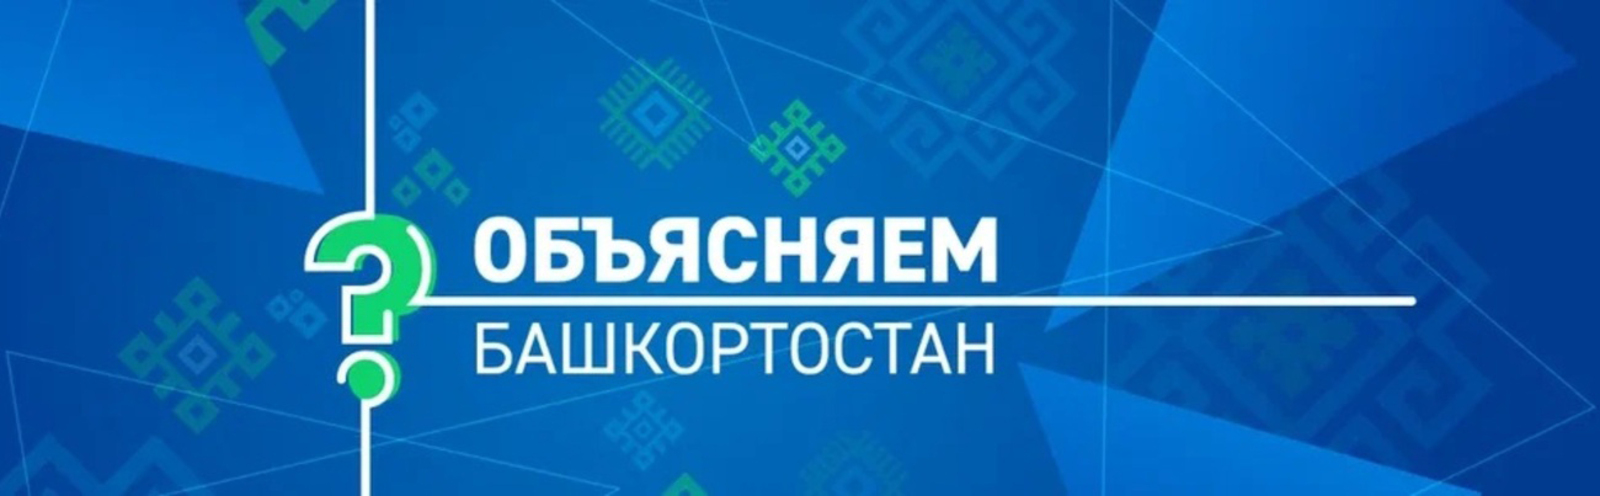 Вопросы по газификации и догазификации в Башкортостане